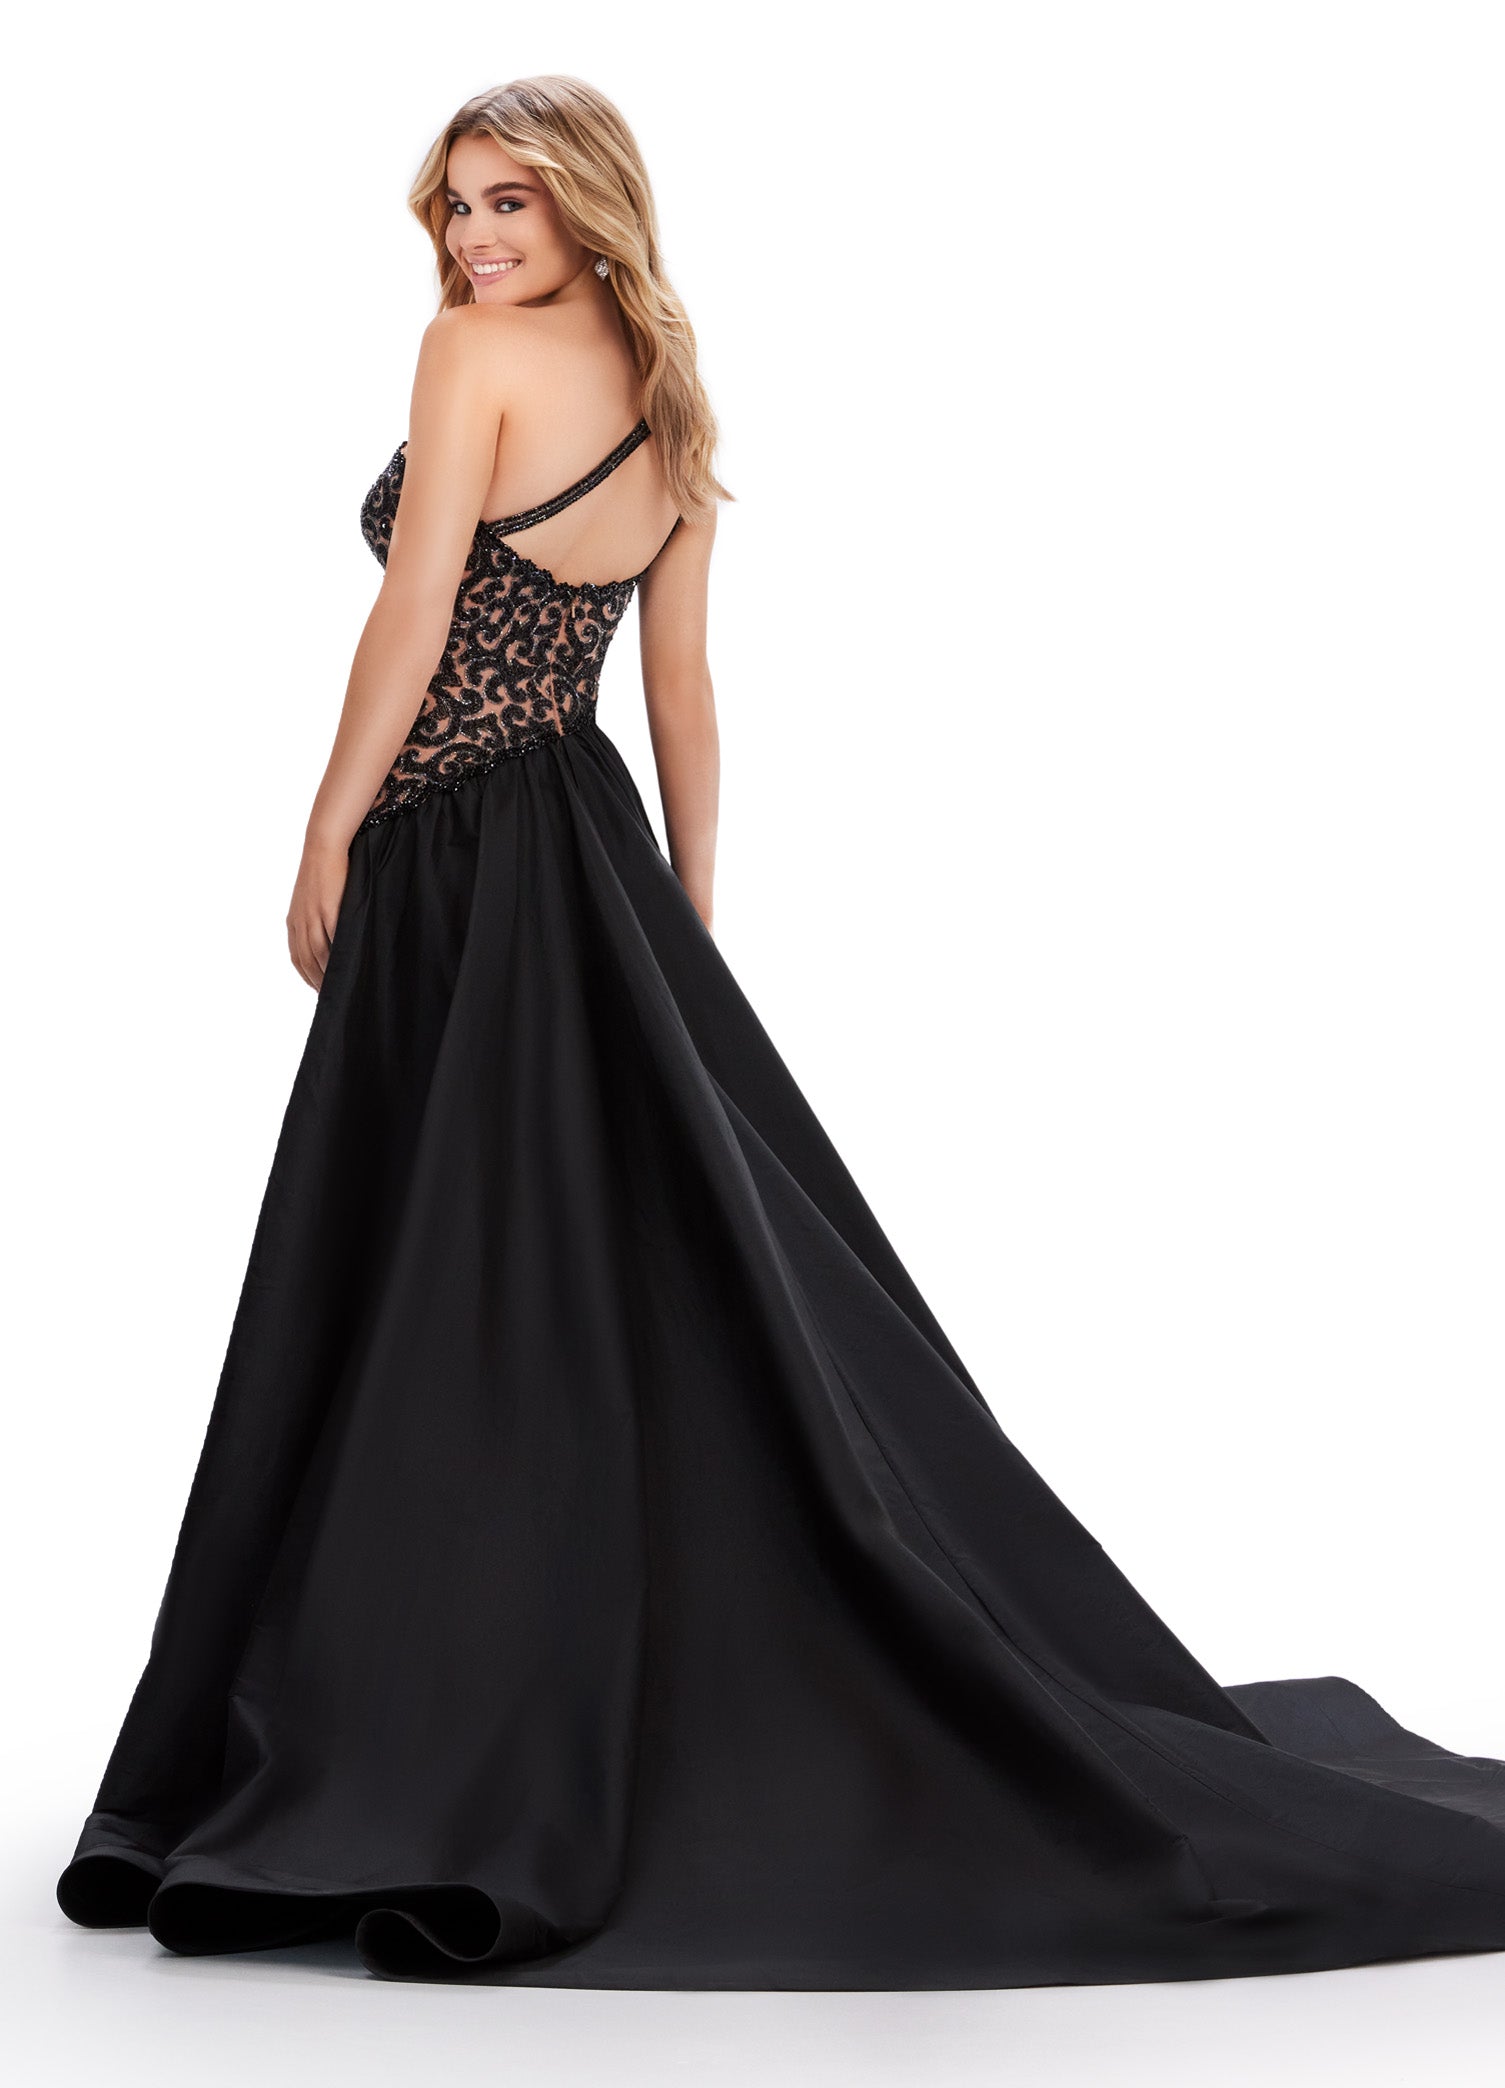 Ashley Lauren 11458 Long Prom Dress Fully Beaded Strapless Gown